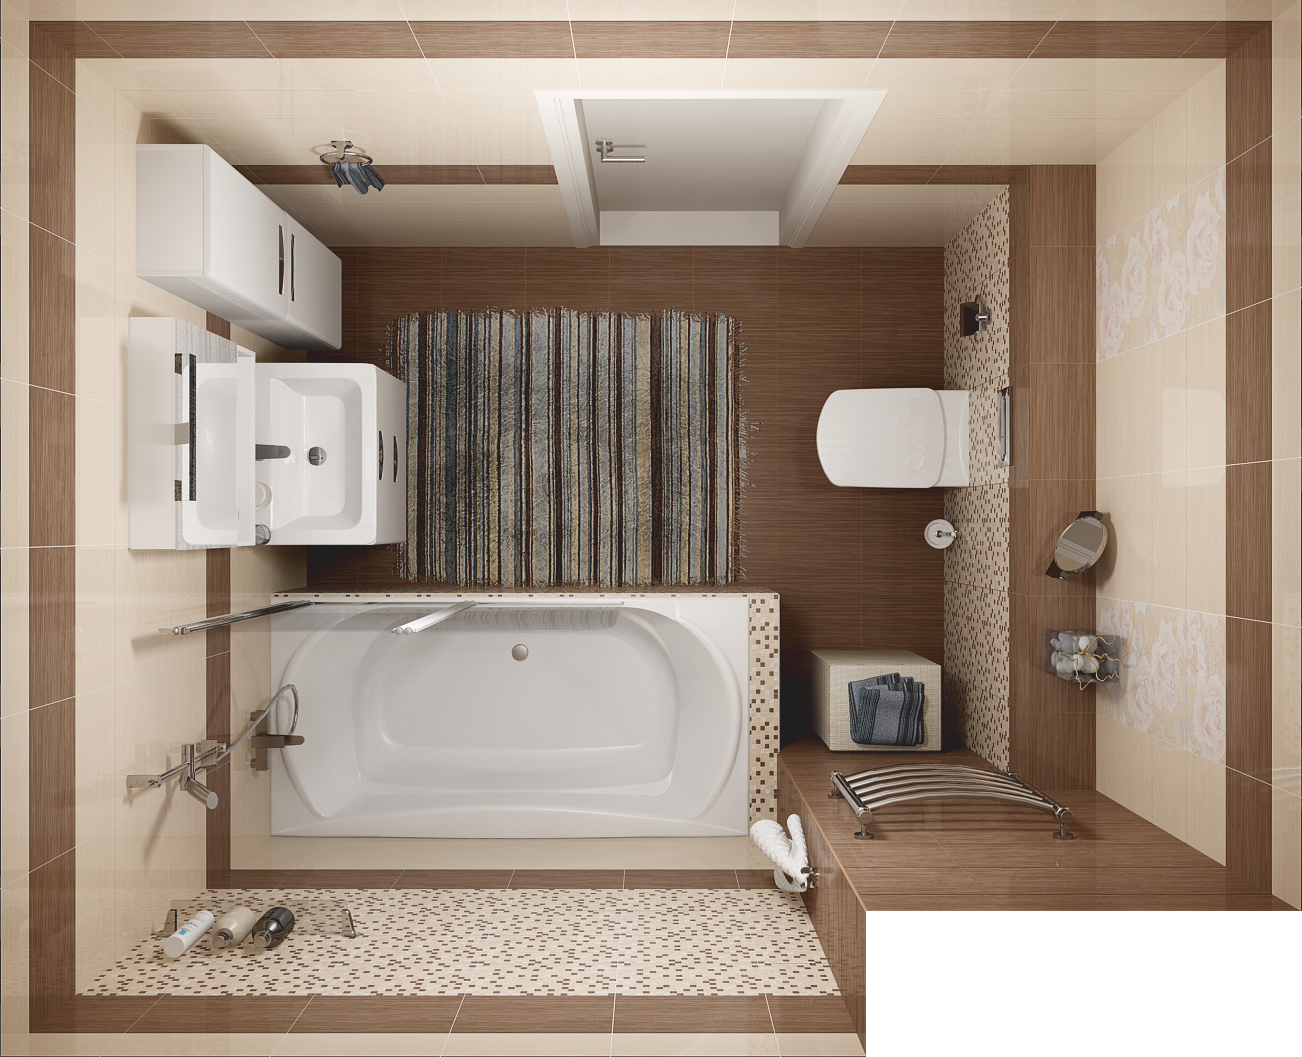 Ванная комната 3 кв. м. - особенности дизайна и планировки (75 фото)